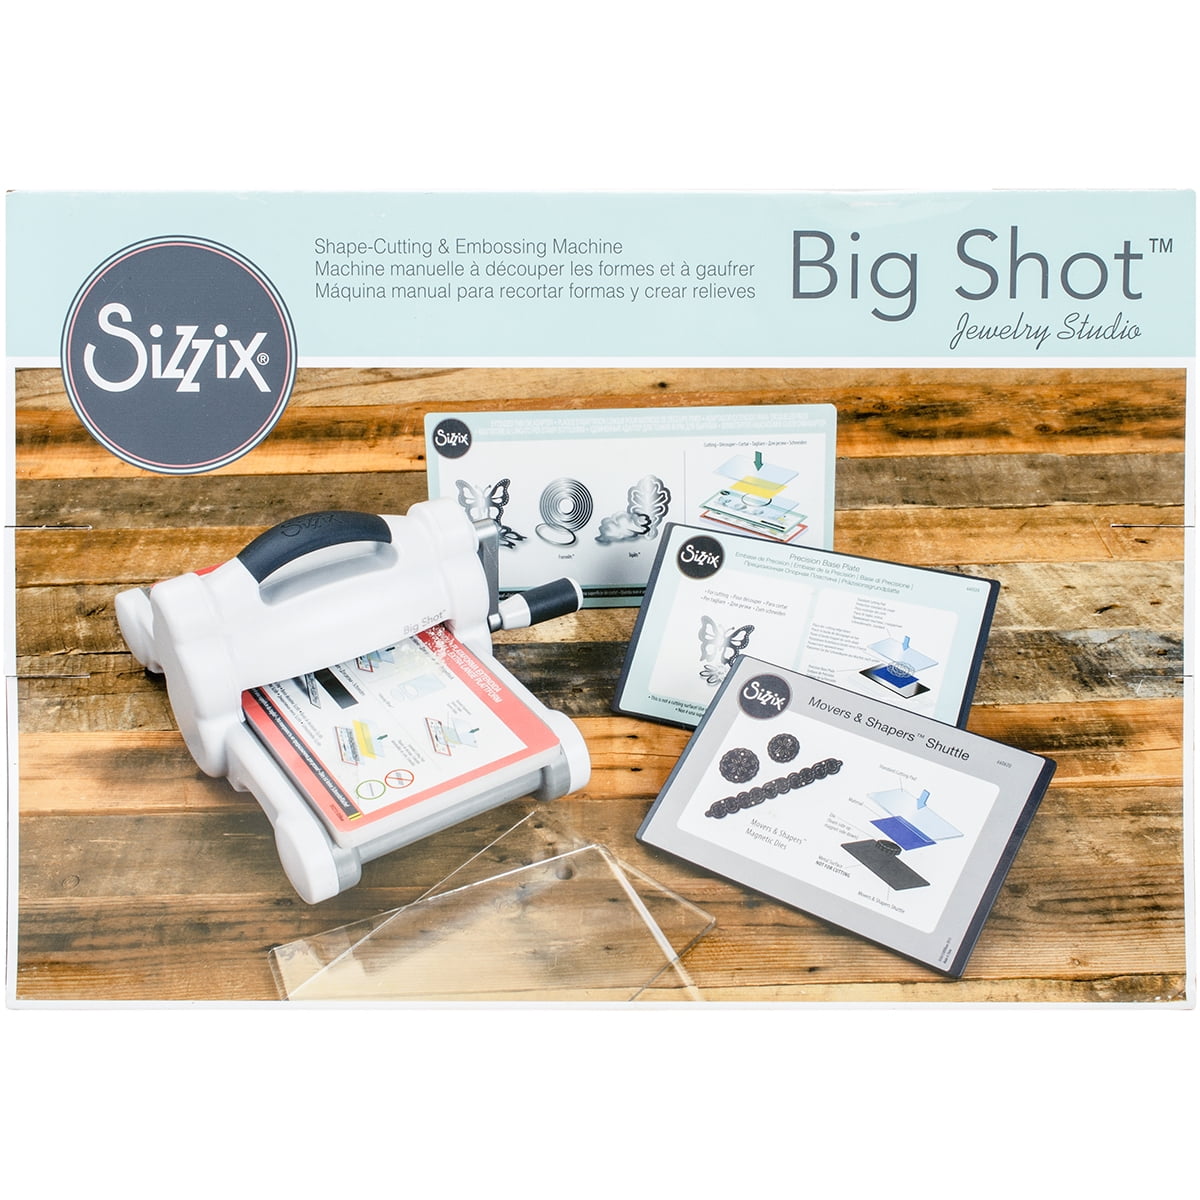 Big Shot Plus A4 size Manual Die Cutting Machine